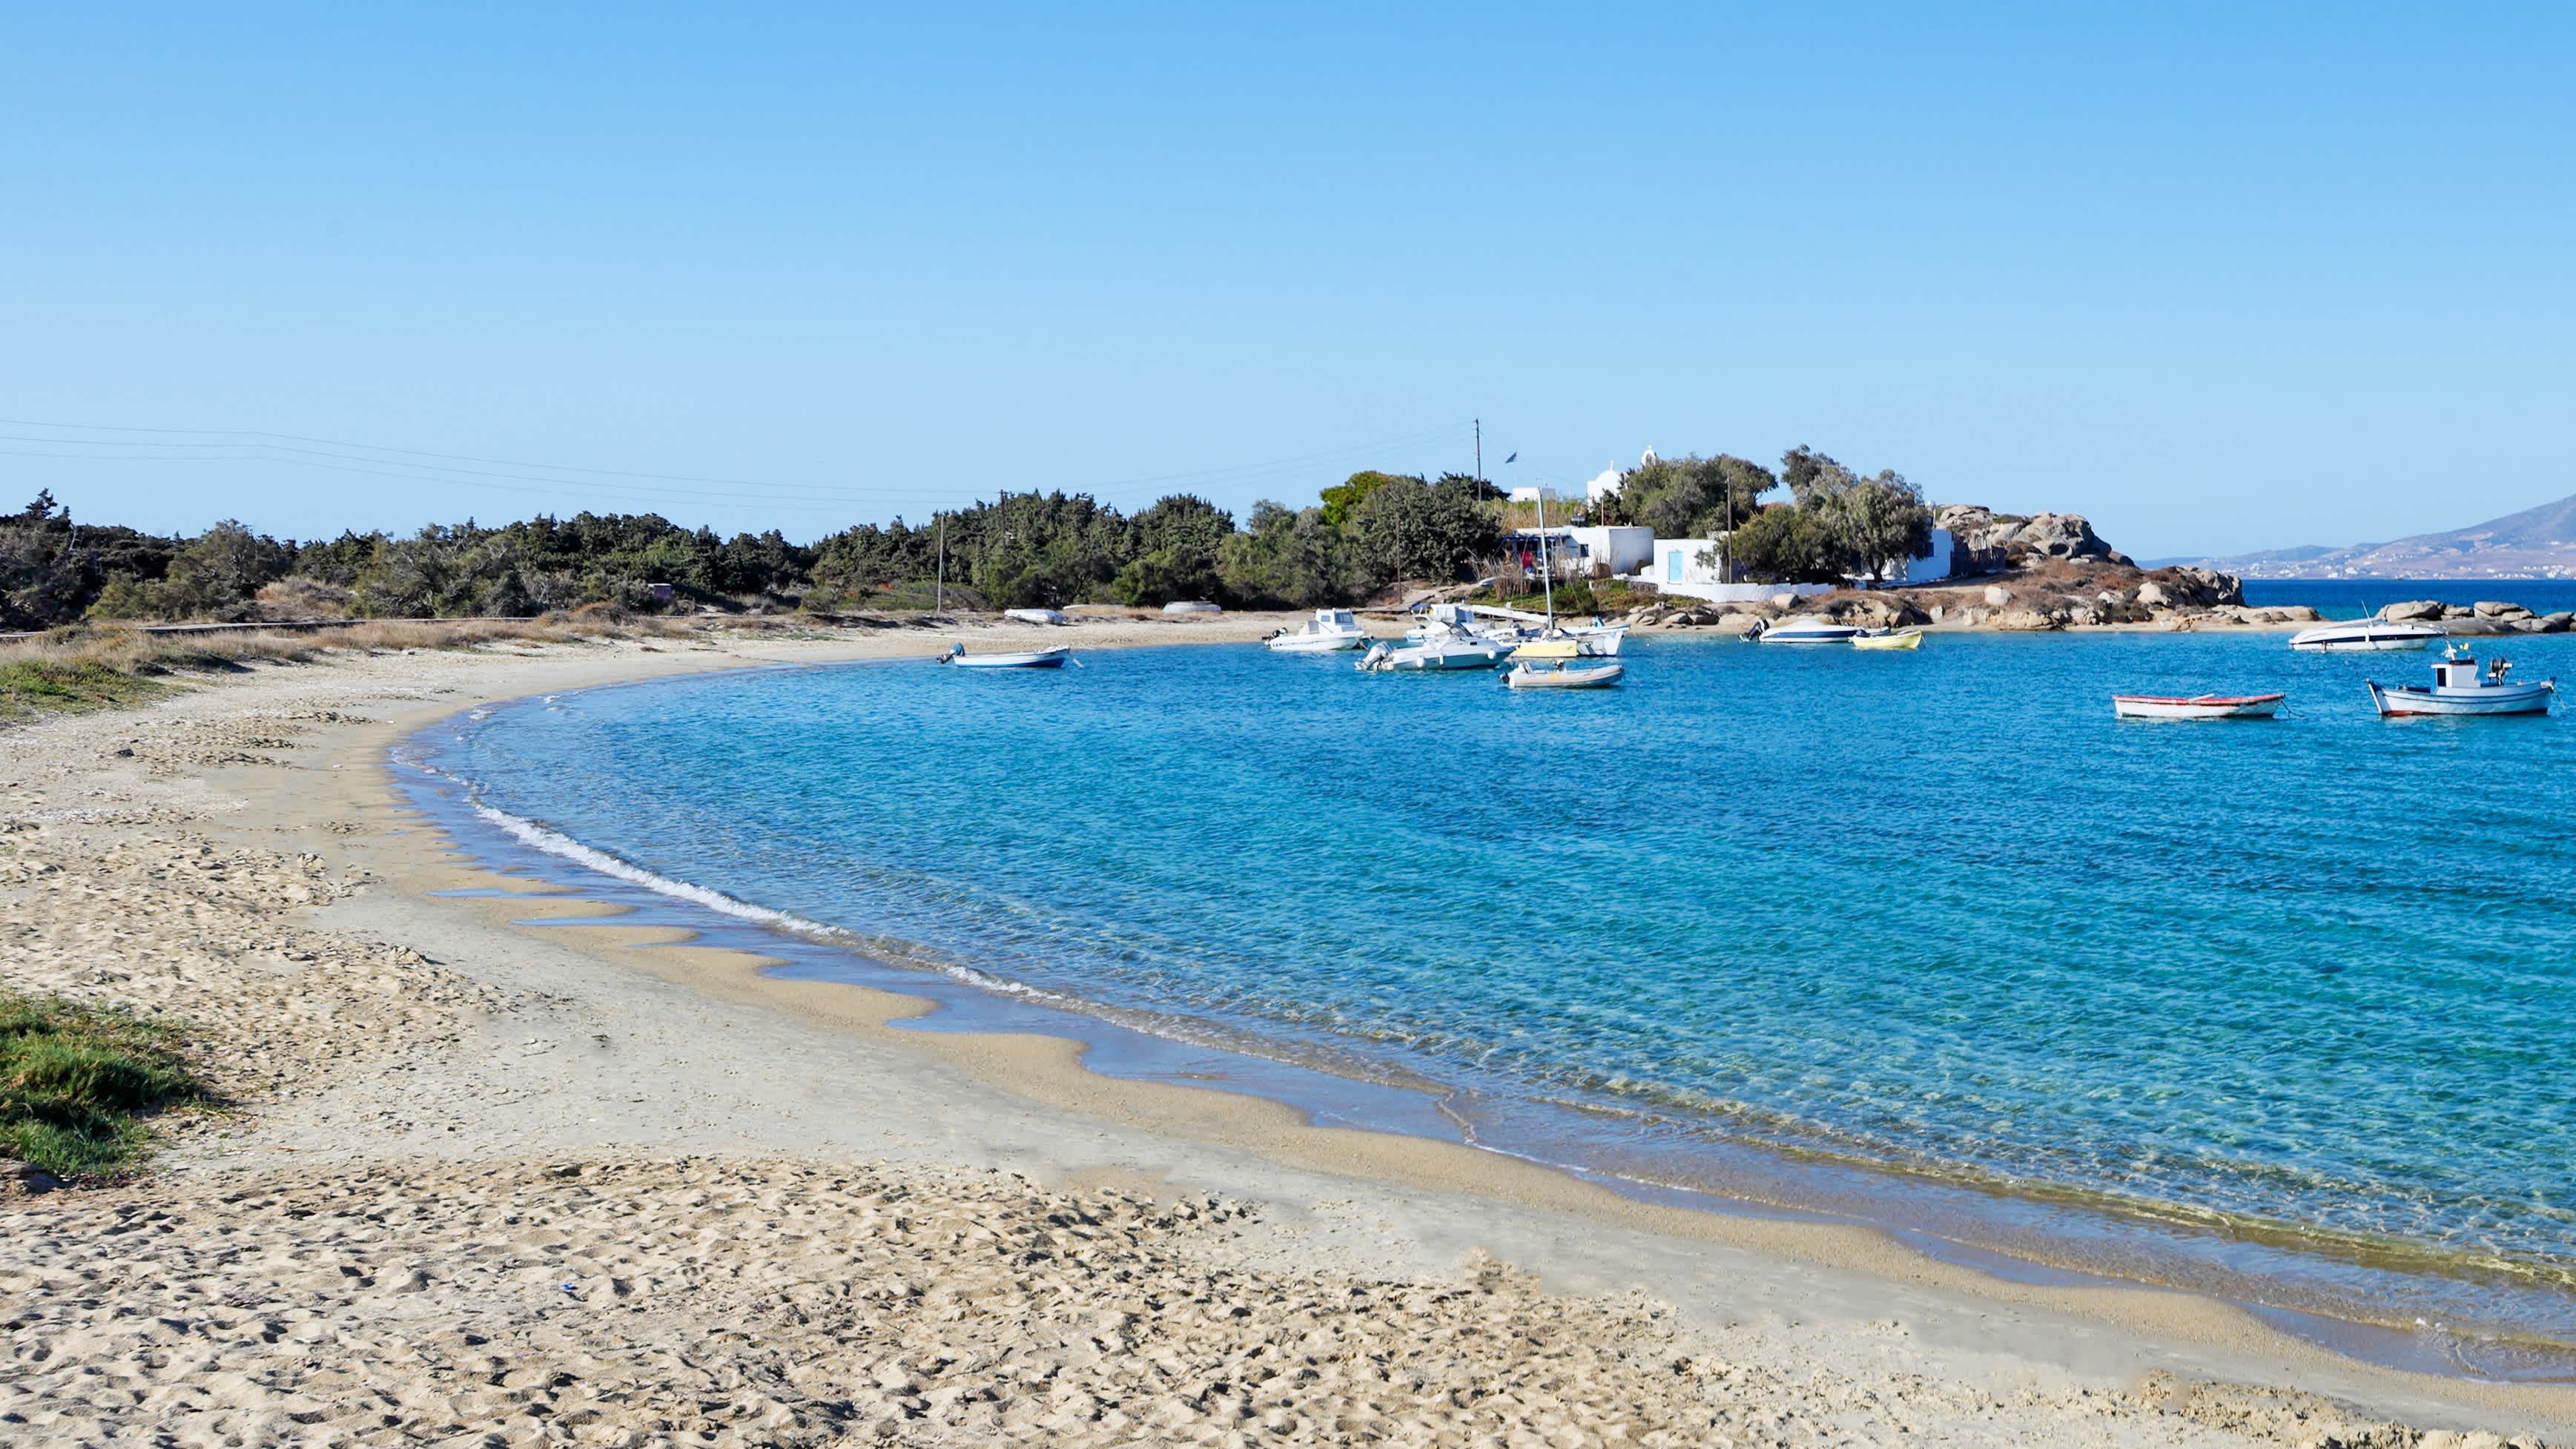 Blick auf die Bucht Agia Anna auf Naxos, Griecheland, mit Sandstrand und Booten auf dem azurblauen Wasser.